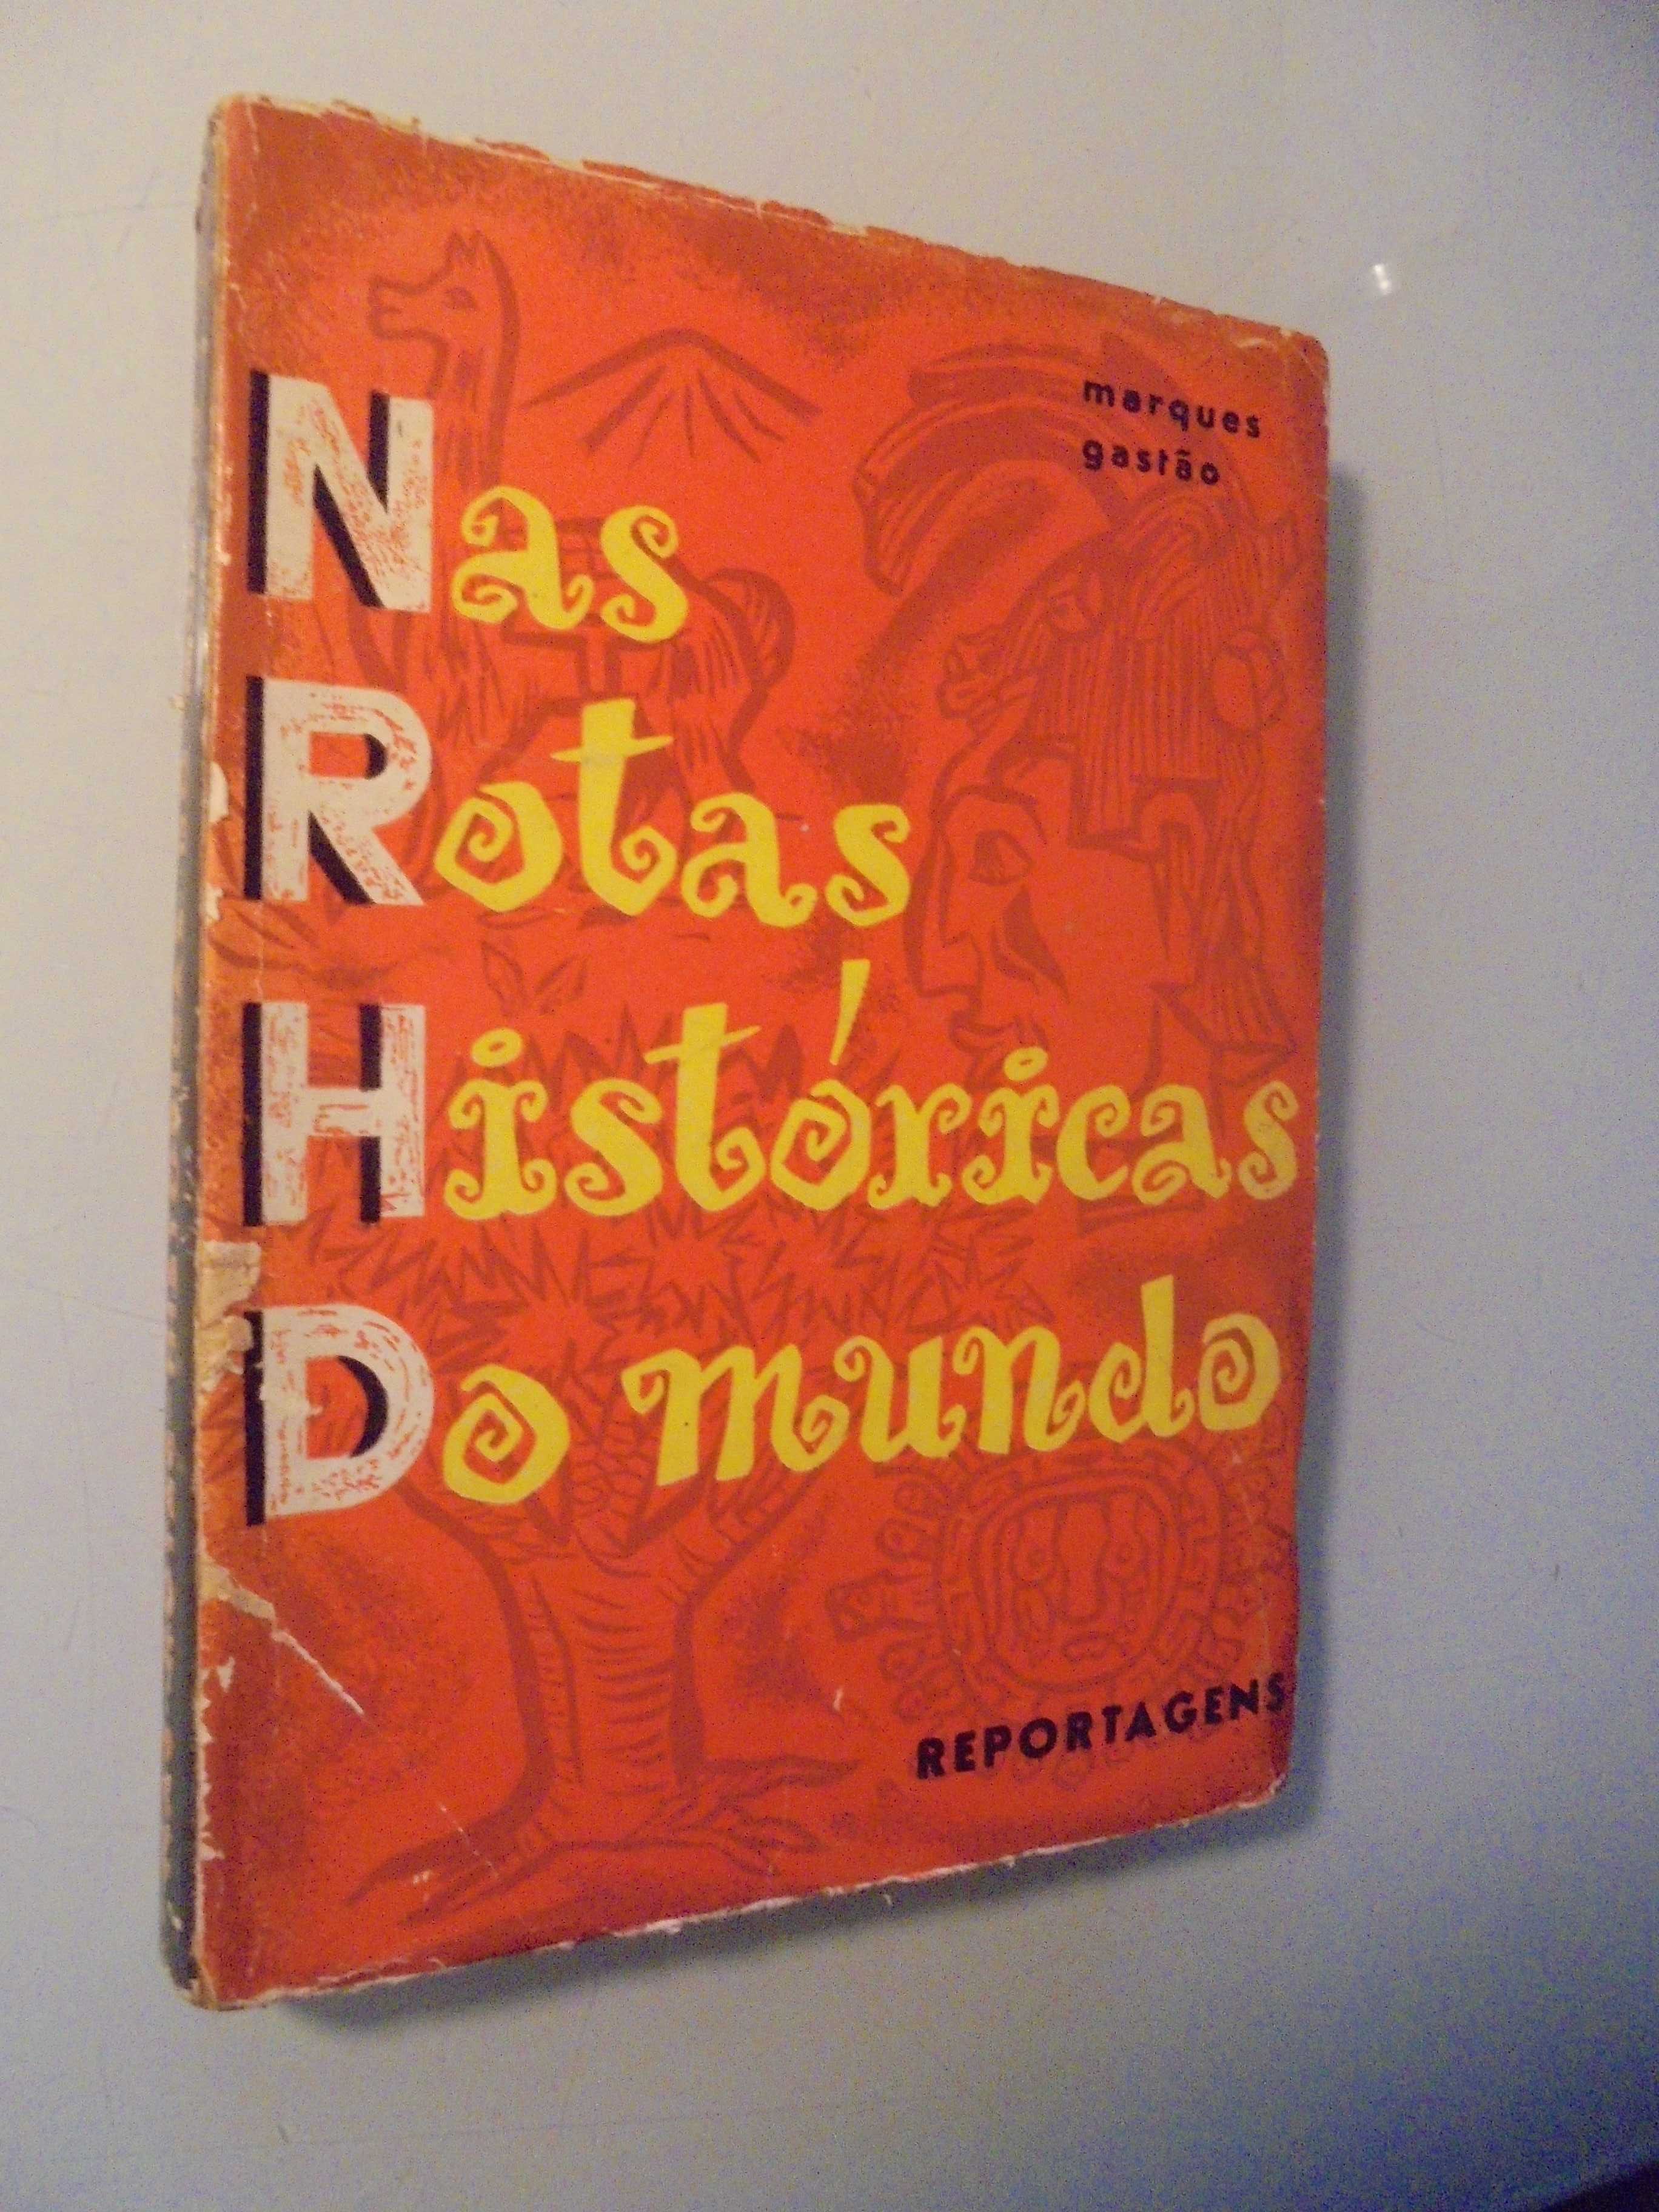 Gastão (Marques);Nas Rotas Históricas do Mundo